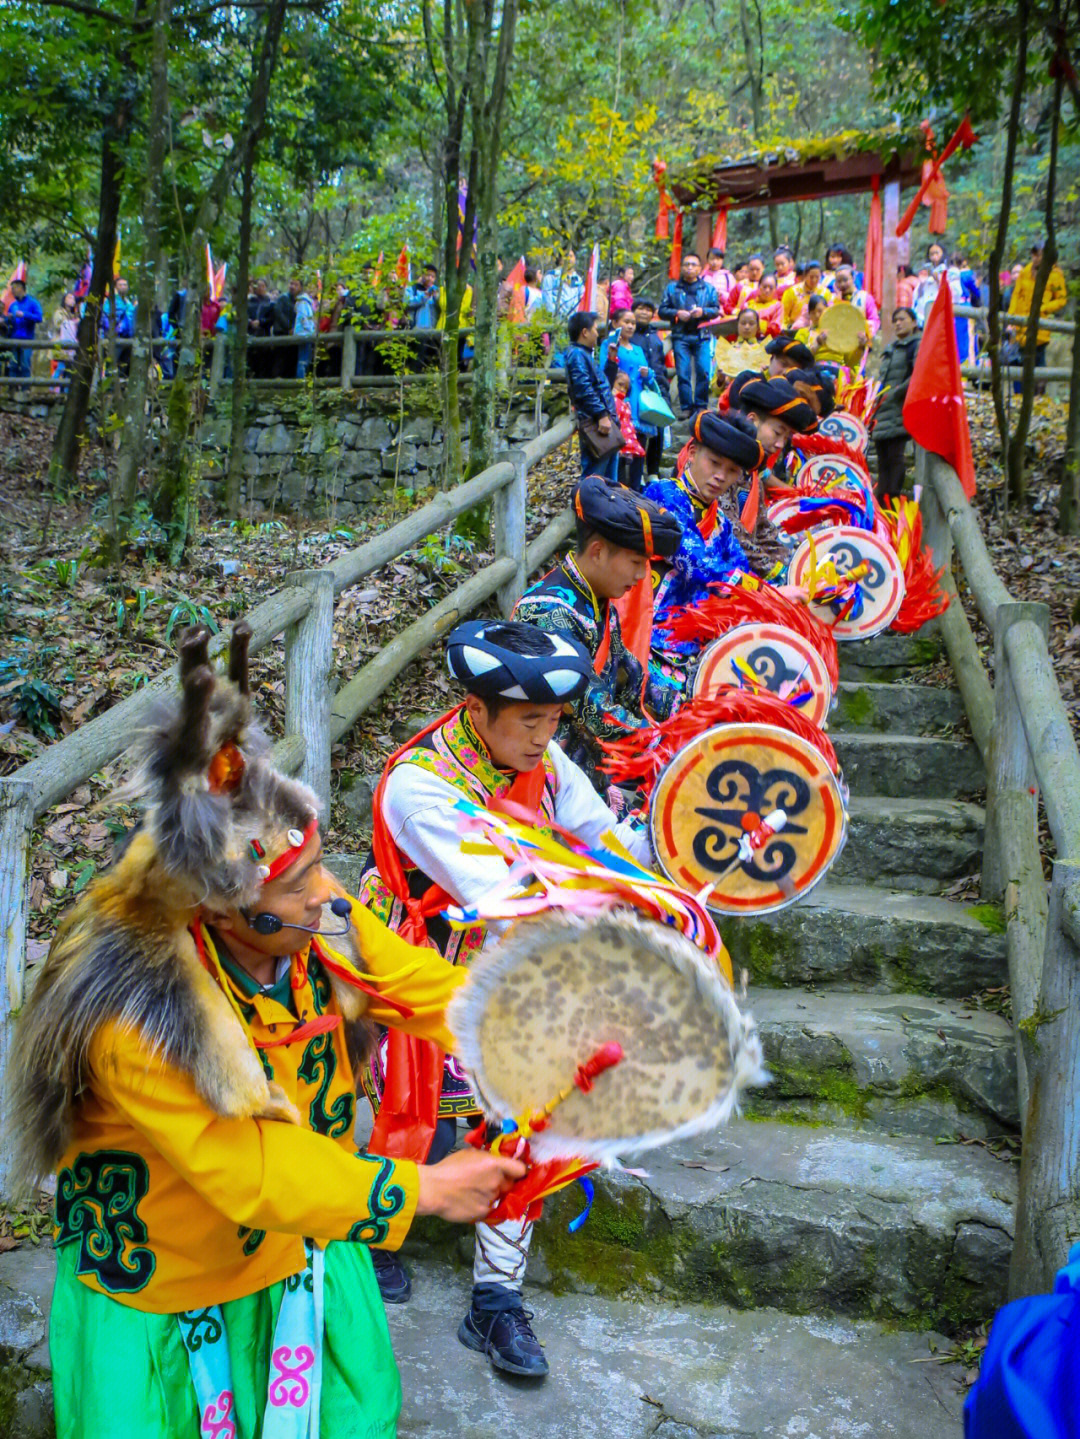 96羌族羊皮鼓舞羌语称为莫恩纳莎或布滋拉,主要流行于四川省